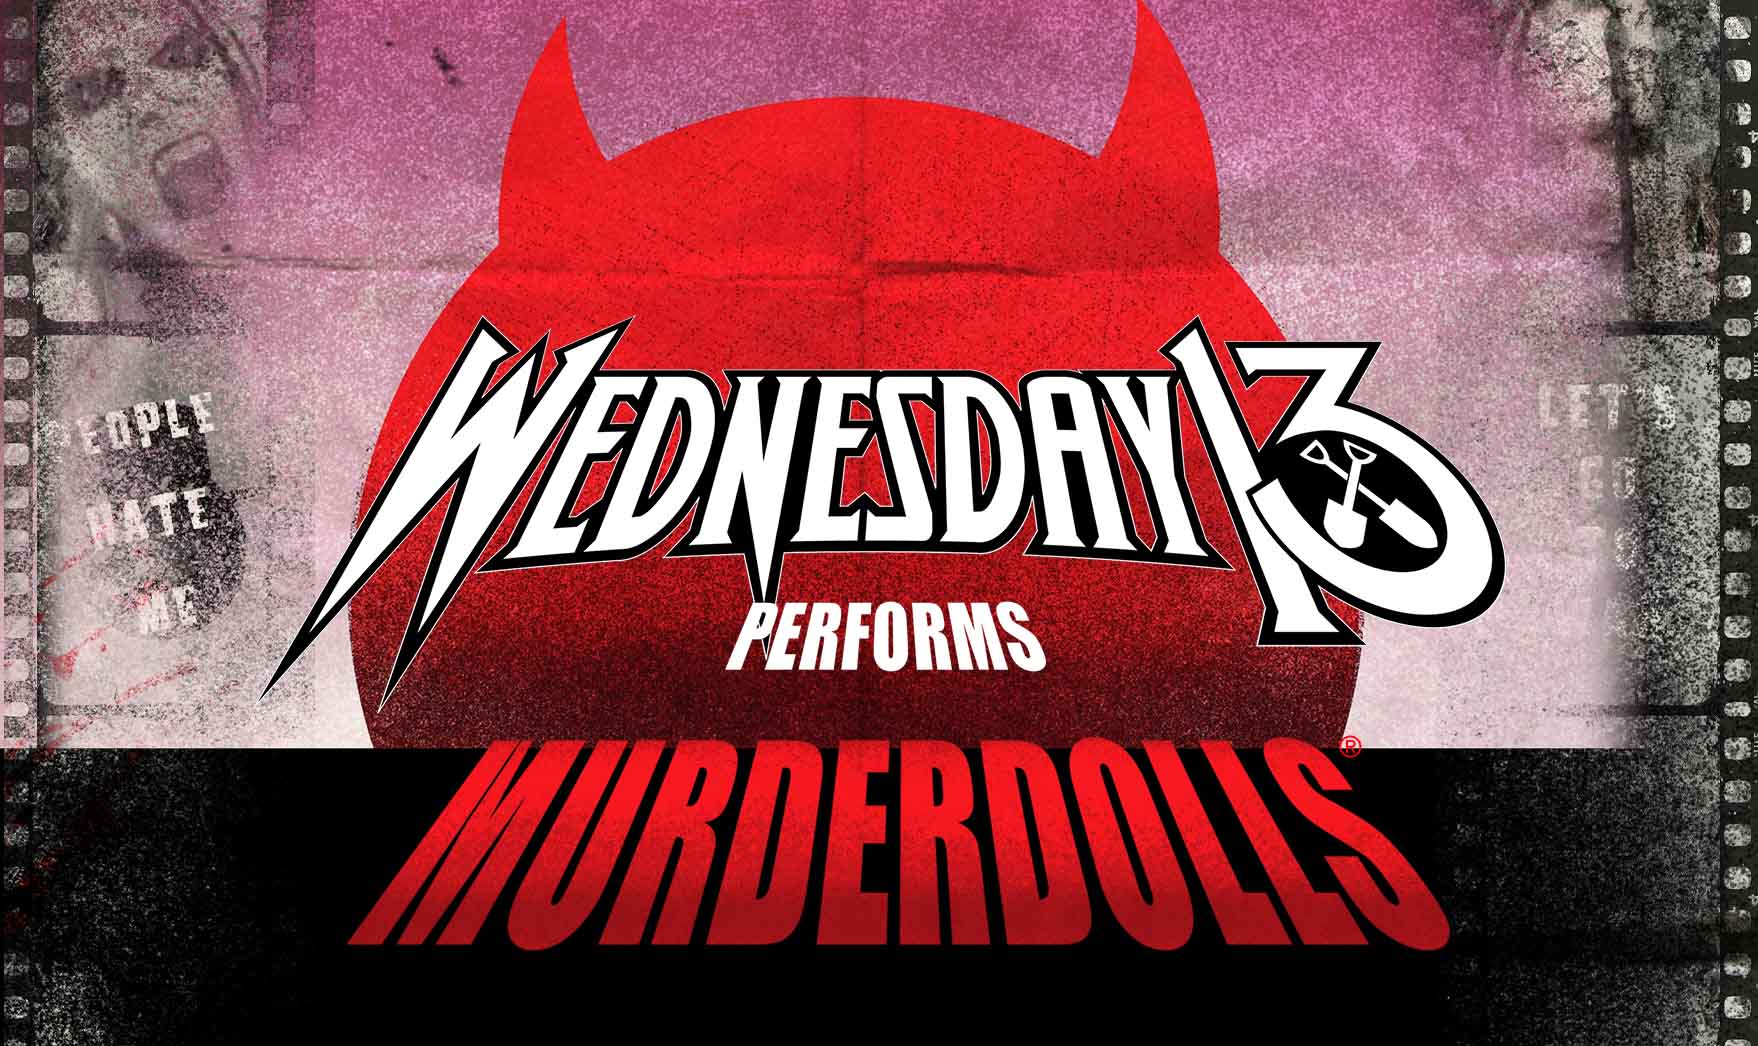 Wednesday 13 Performing Murderdolls in der Manchester Club Academy Tickets